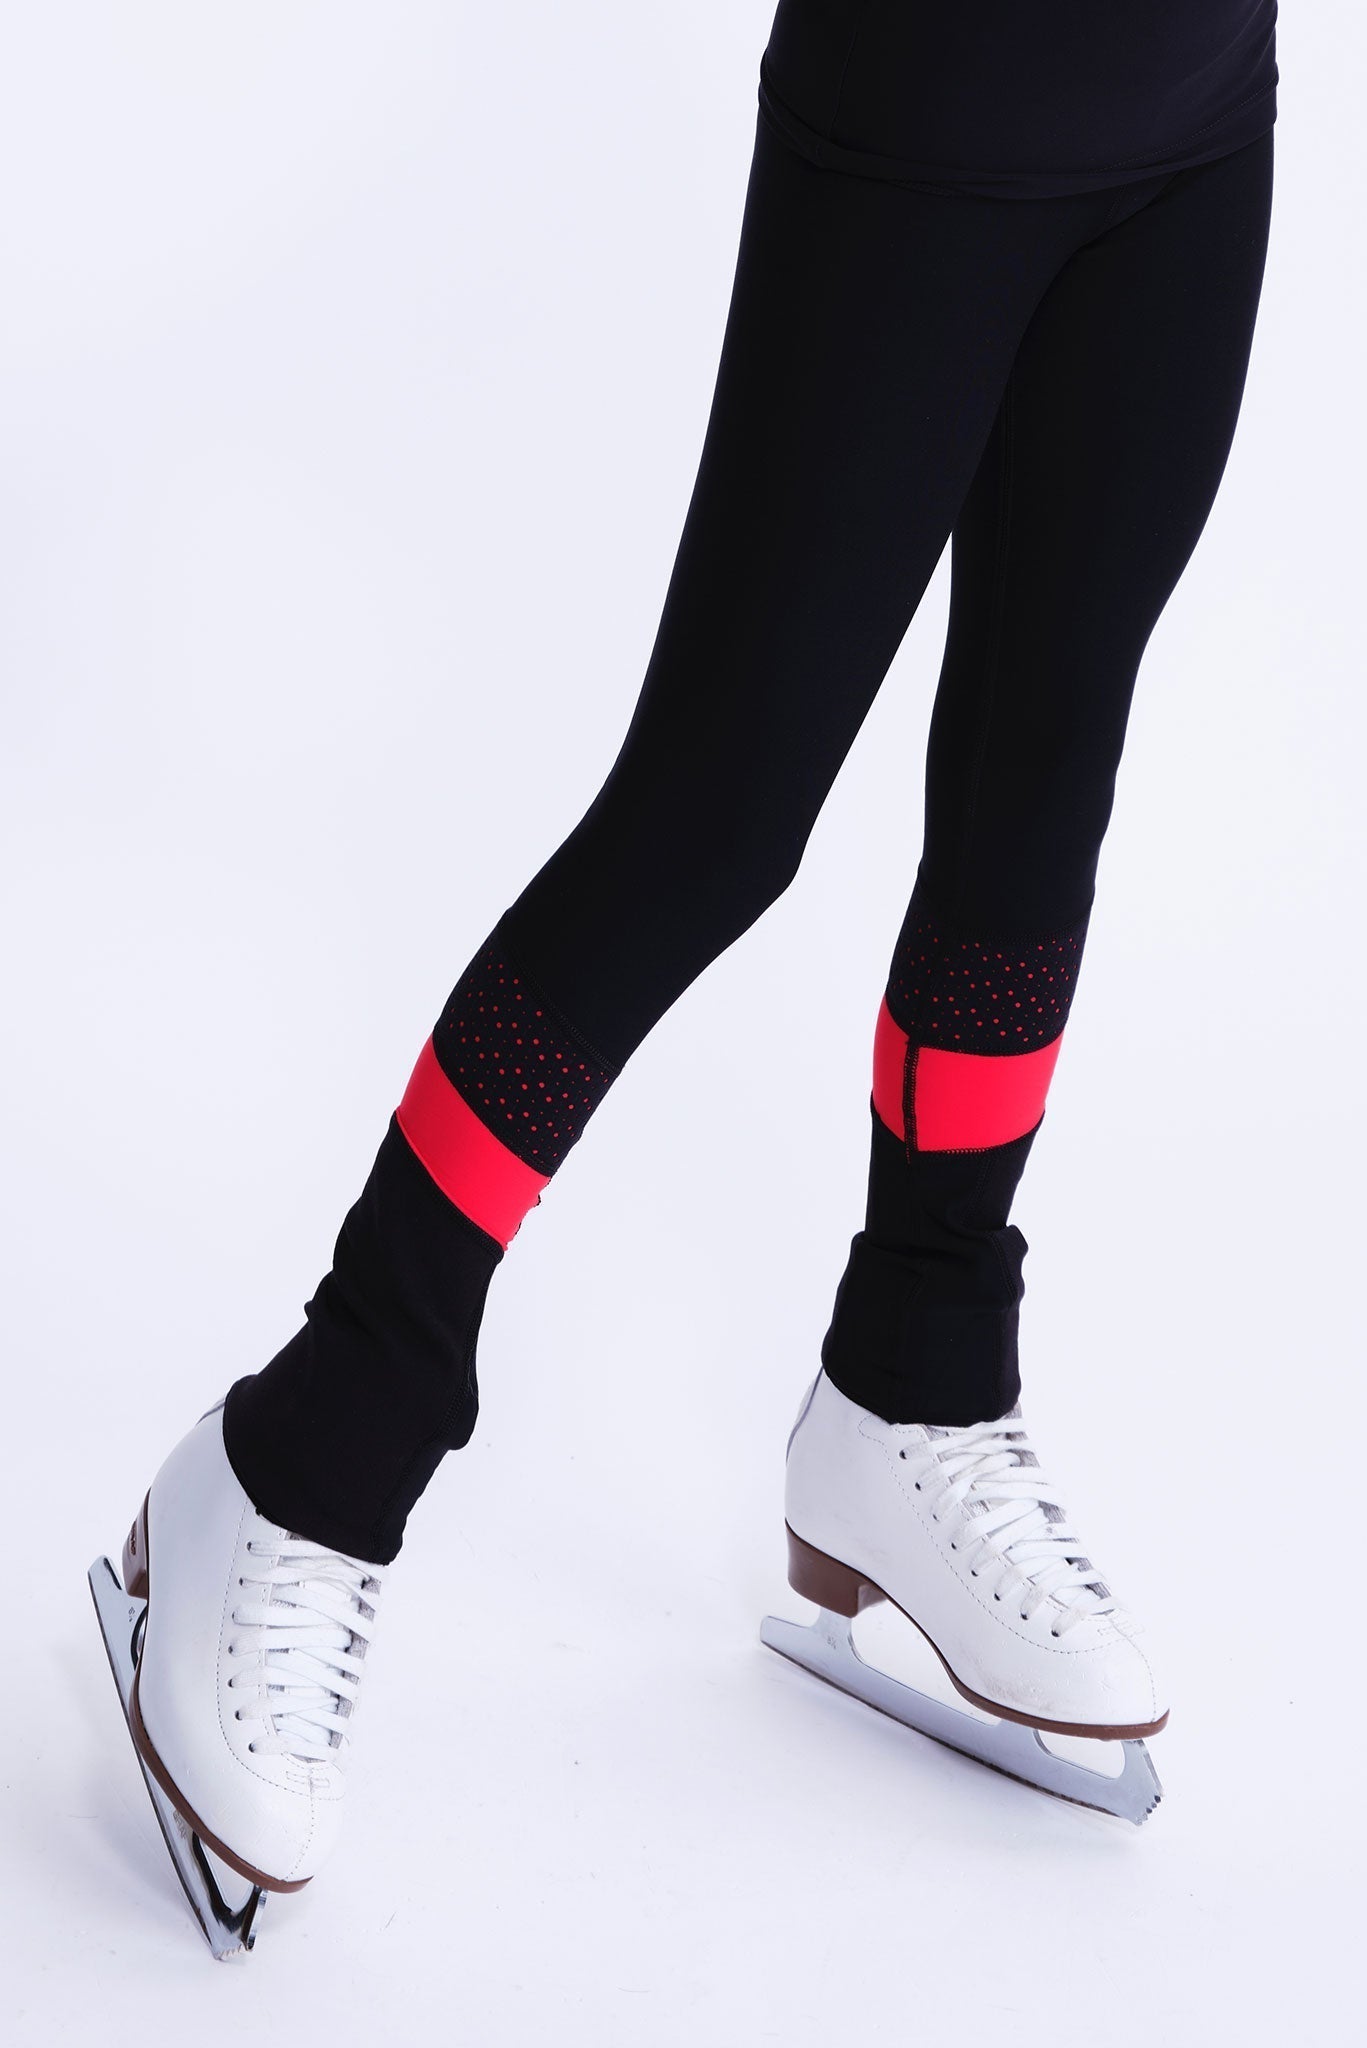 Buy Red & Black Leggings for Girls by D'Chica Online